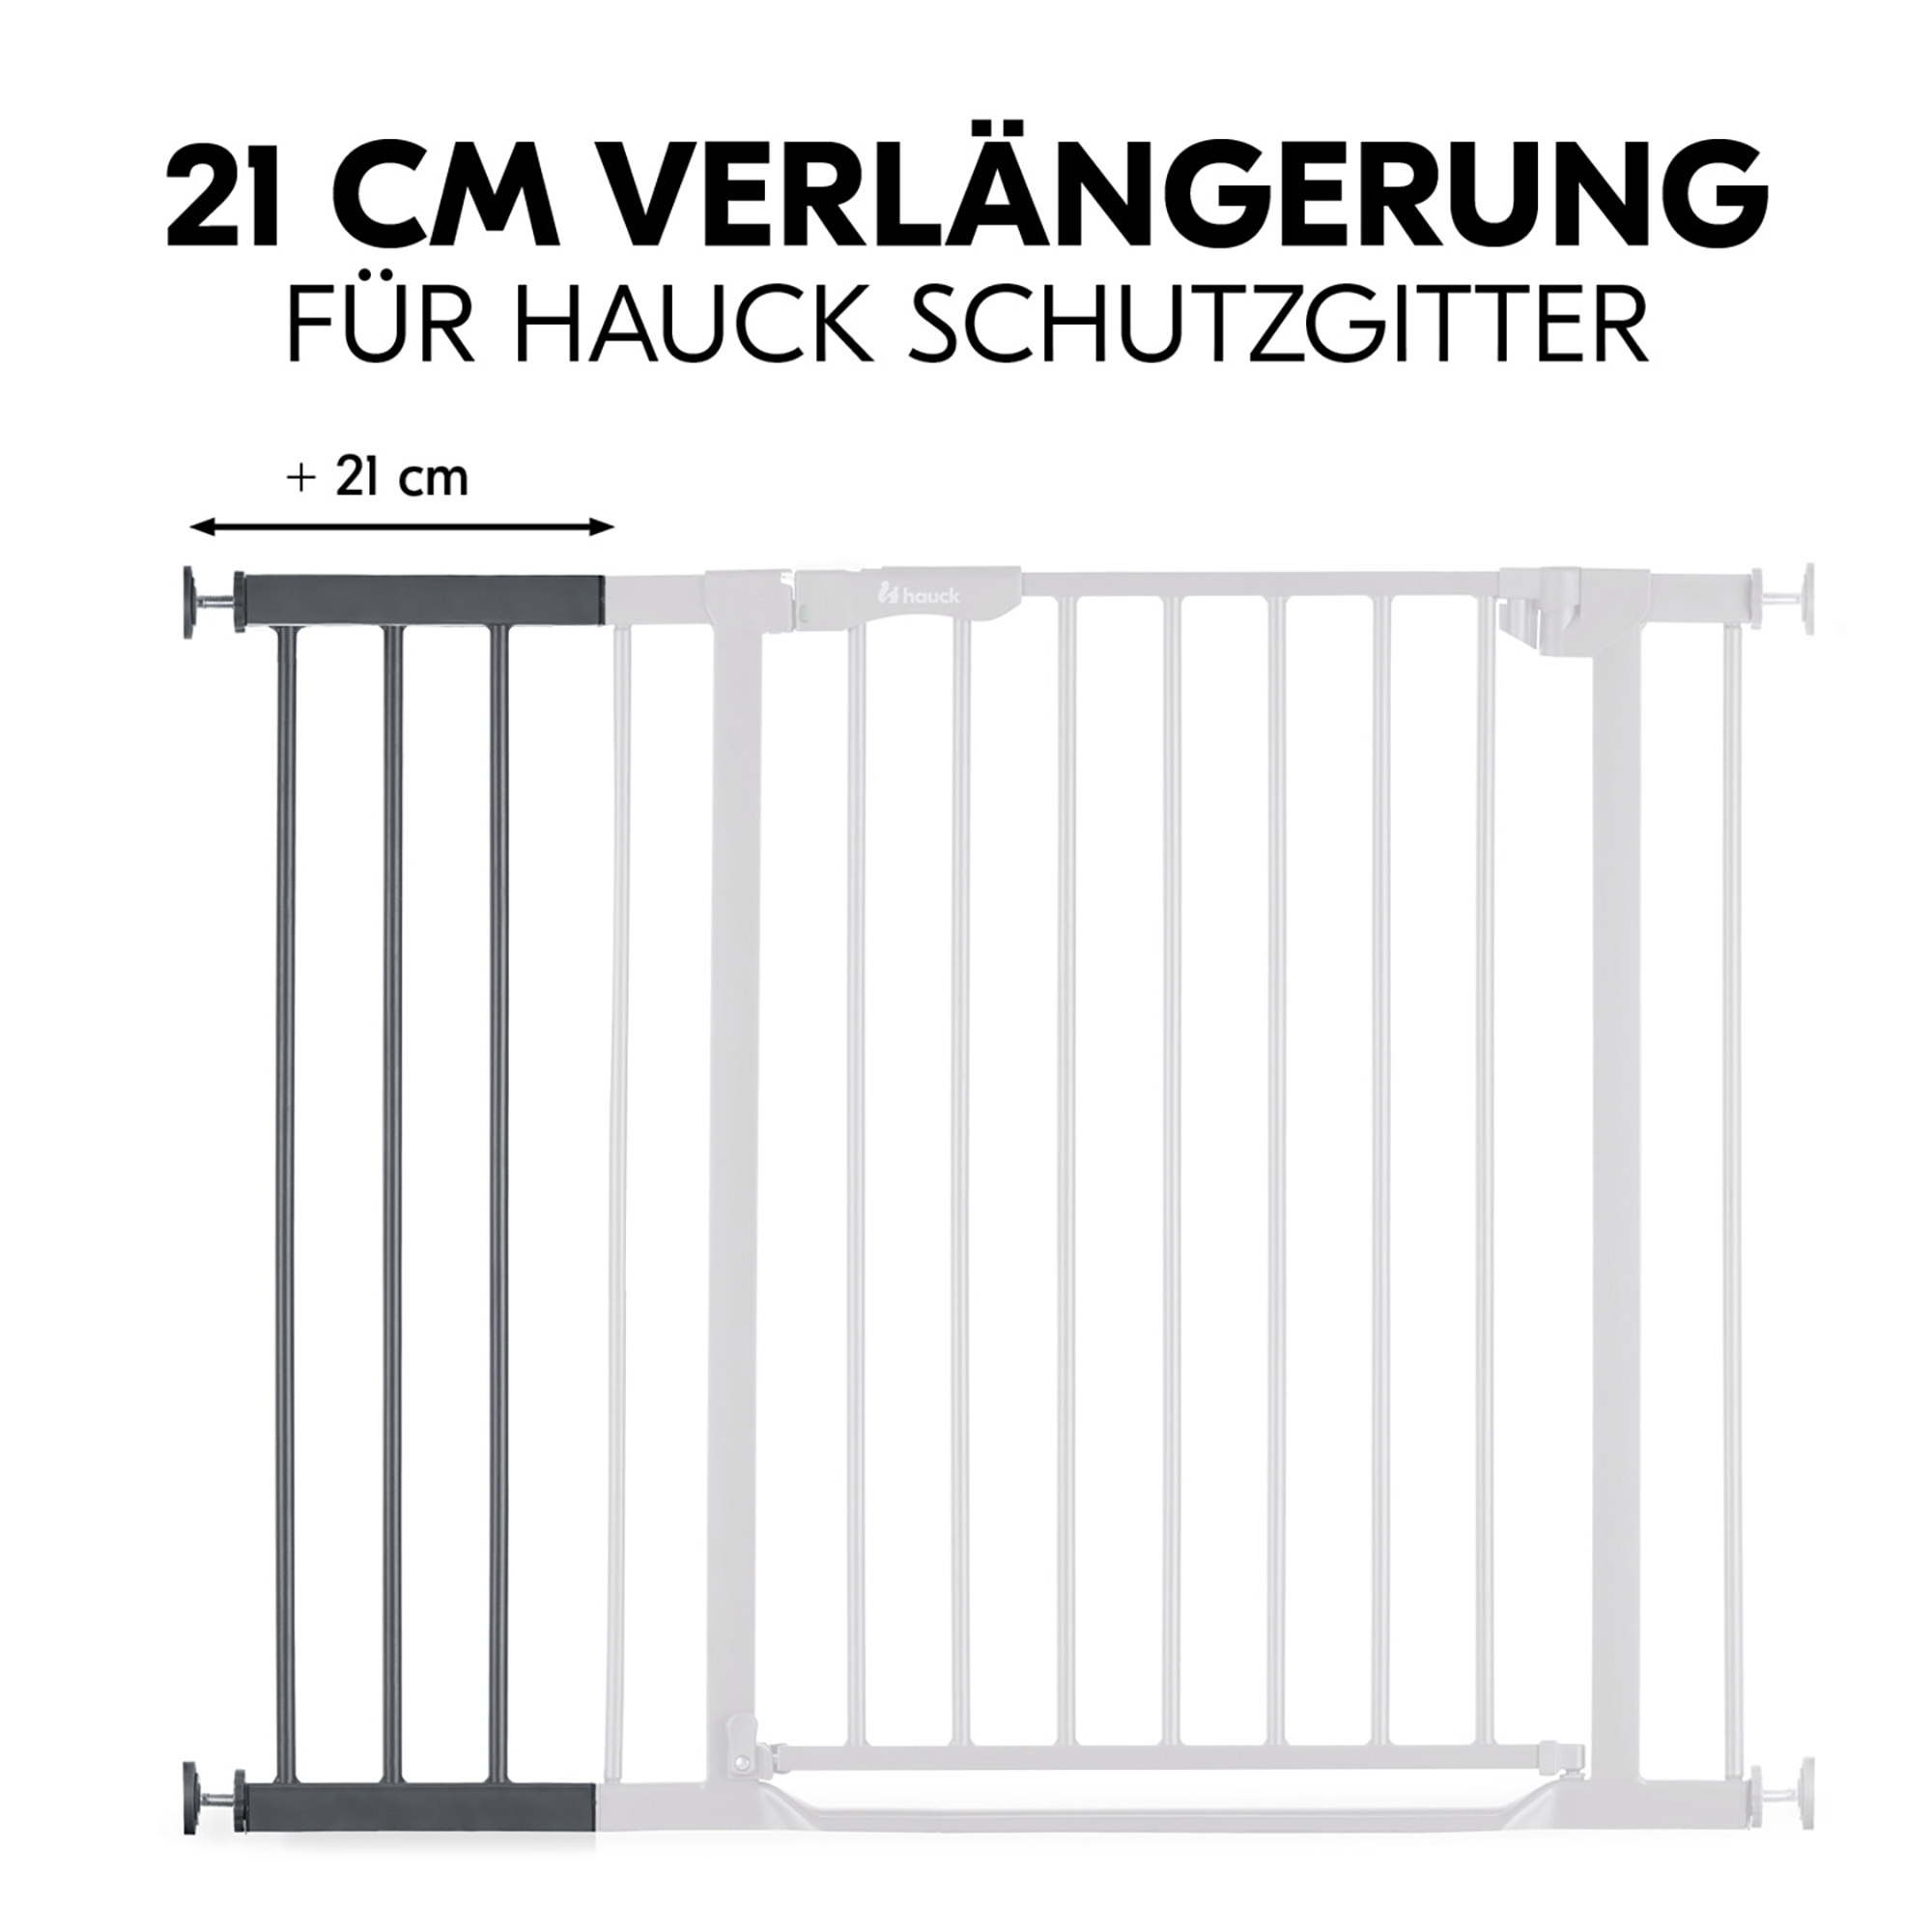 Universal Verlängerung 21 cm für hauck Schutzgitter hauck Grau Grau 2000585366100 2